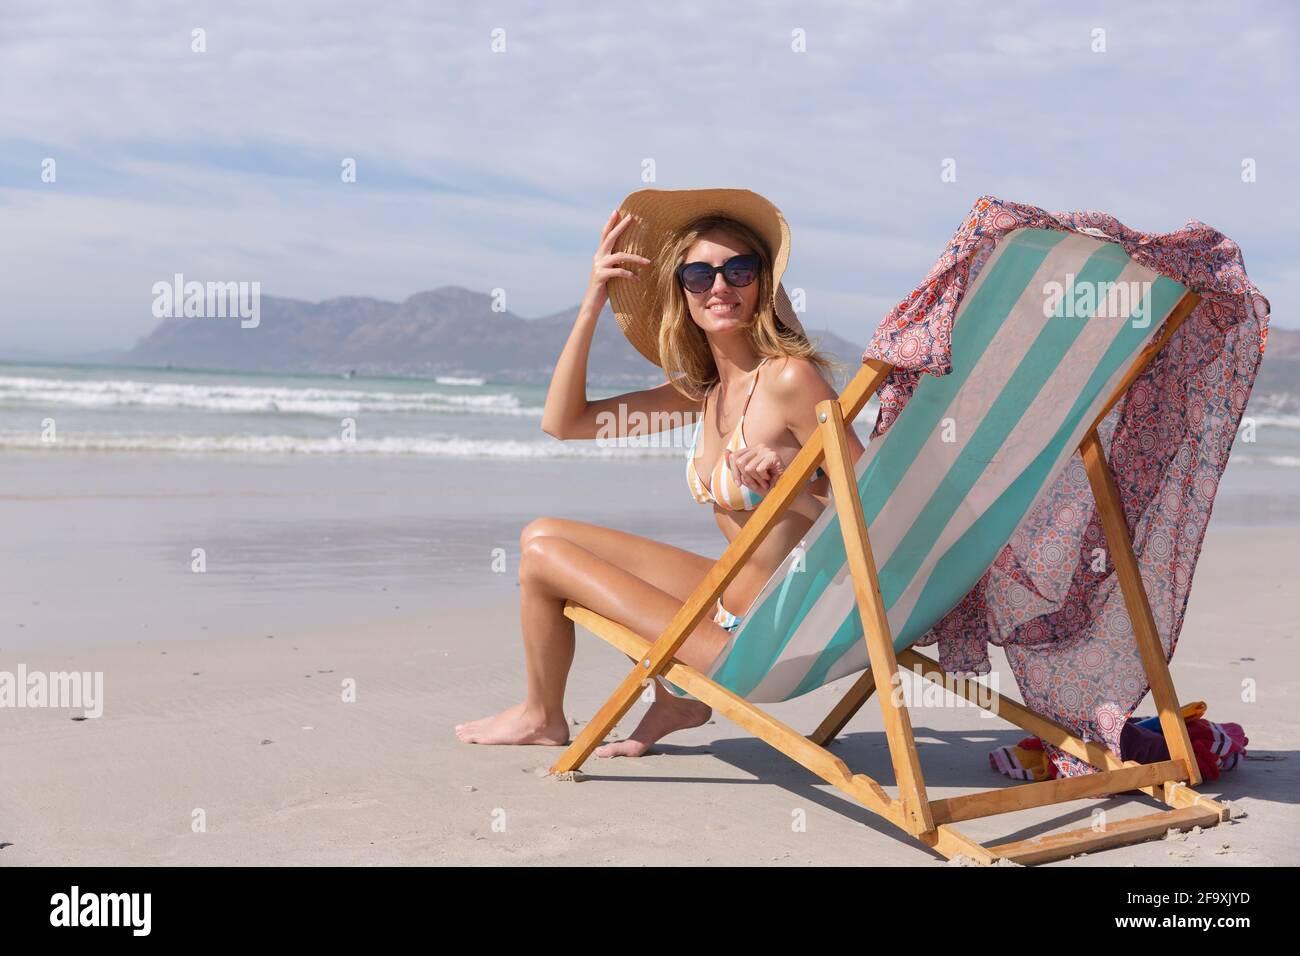 Lächelnde kaukasische Frau im Bikini sitzend auf dem Liegestuhl und sah aus Vor der Kamera am Strand Stockfoto